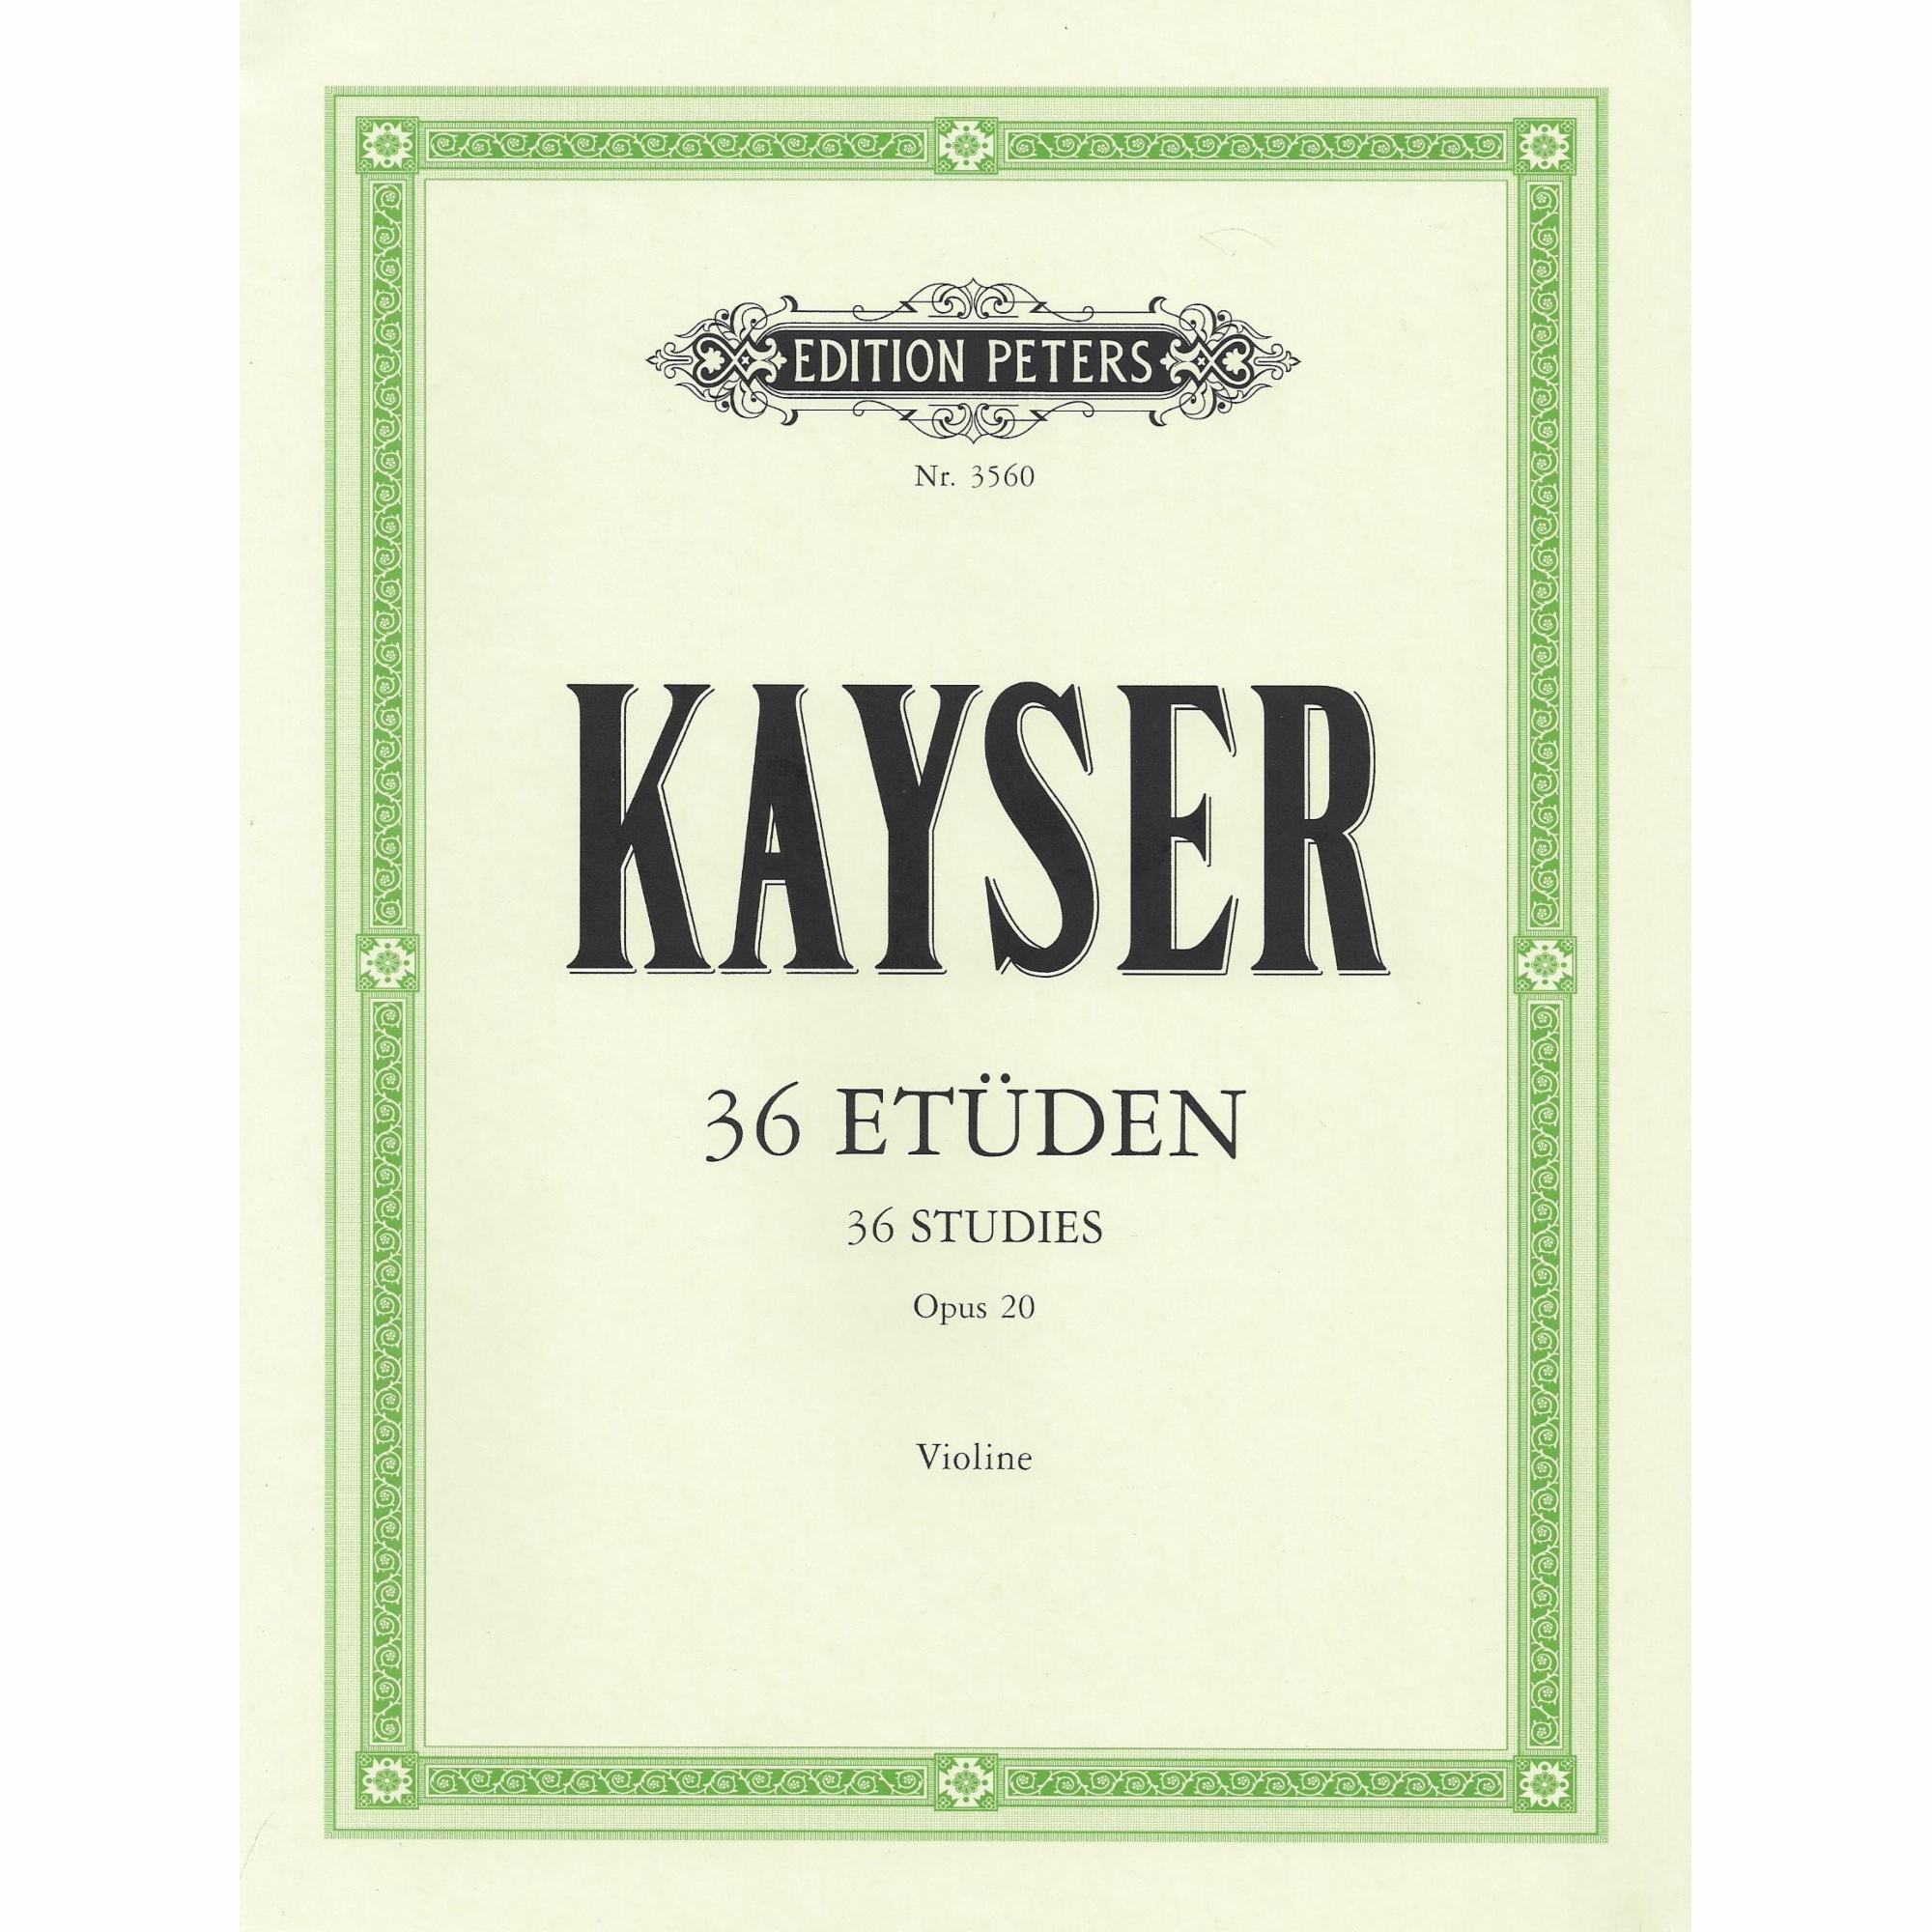 Kayser -- 36 Studies, Op. 20 for Violin